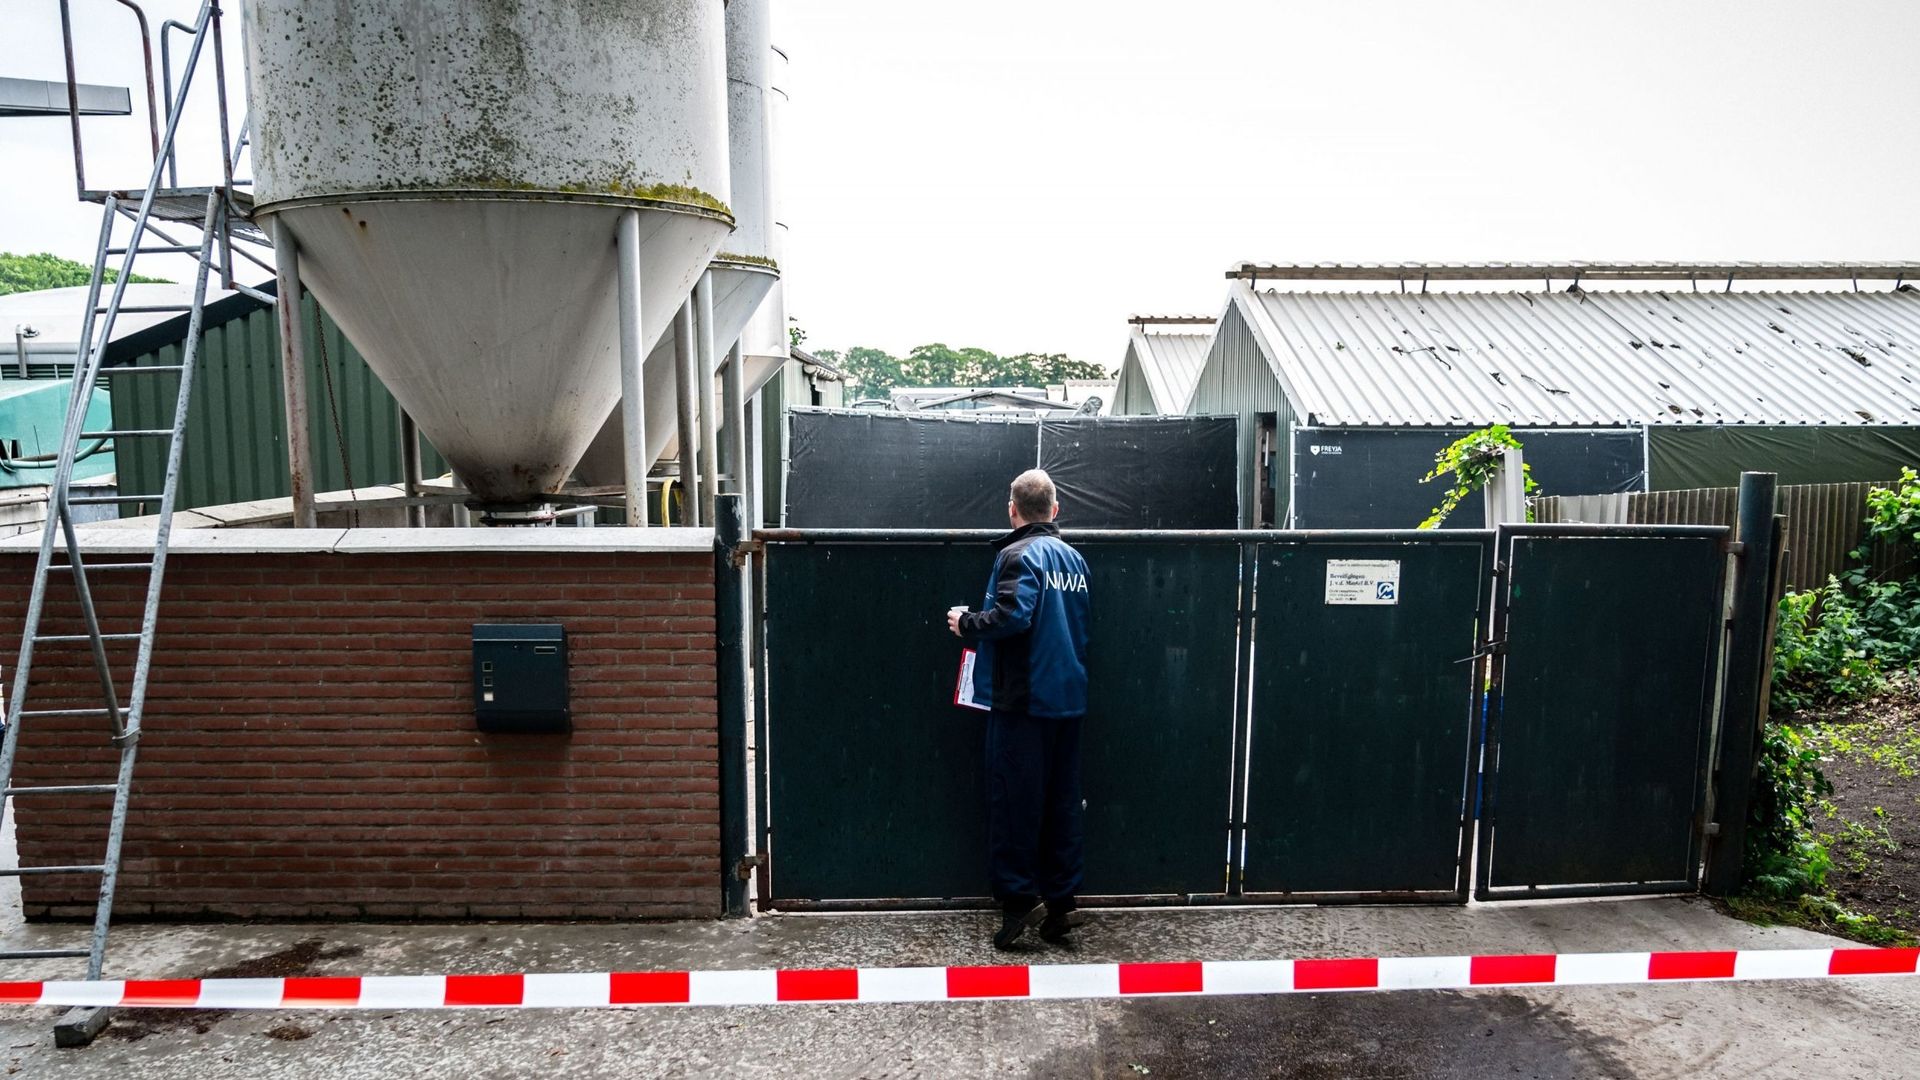 Nouvel élevage touché par le coronavirus aux Pays-Bas : 3500 visons abattus